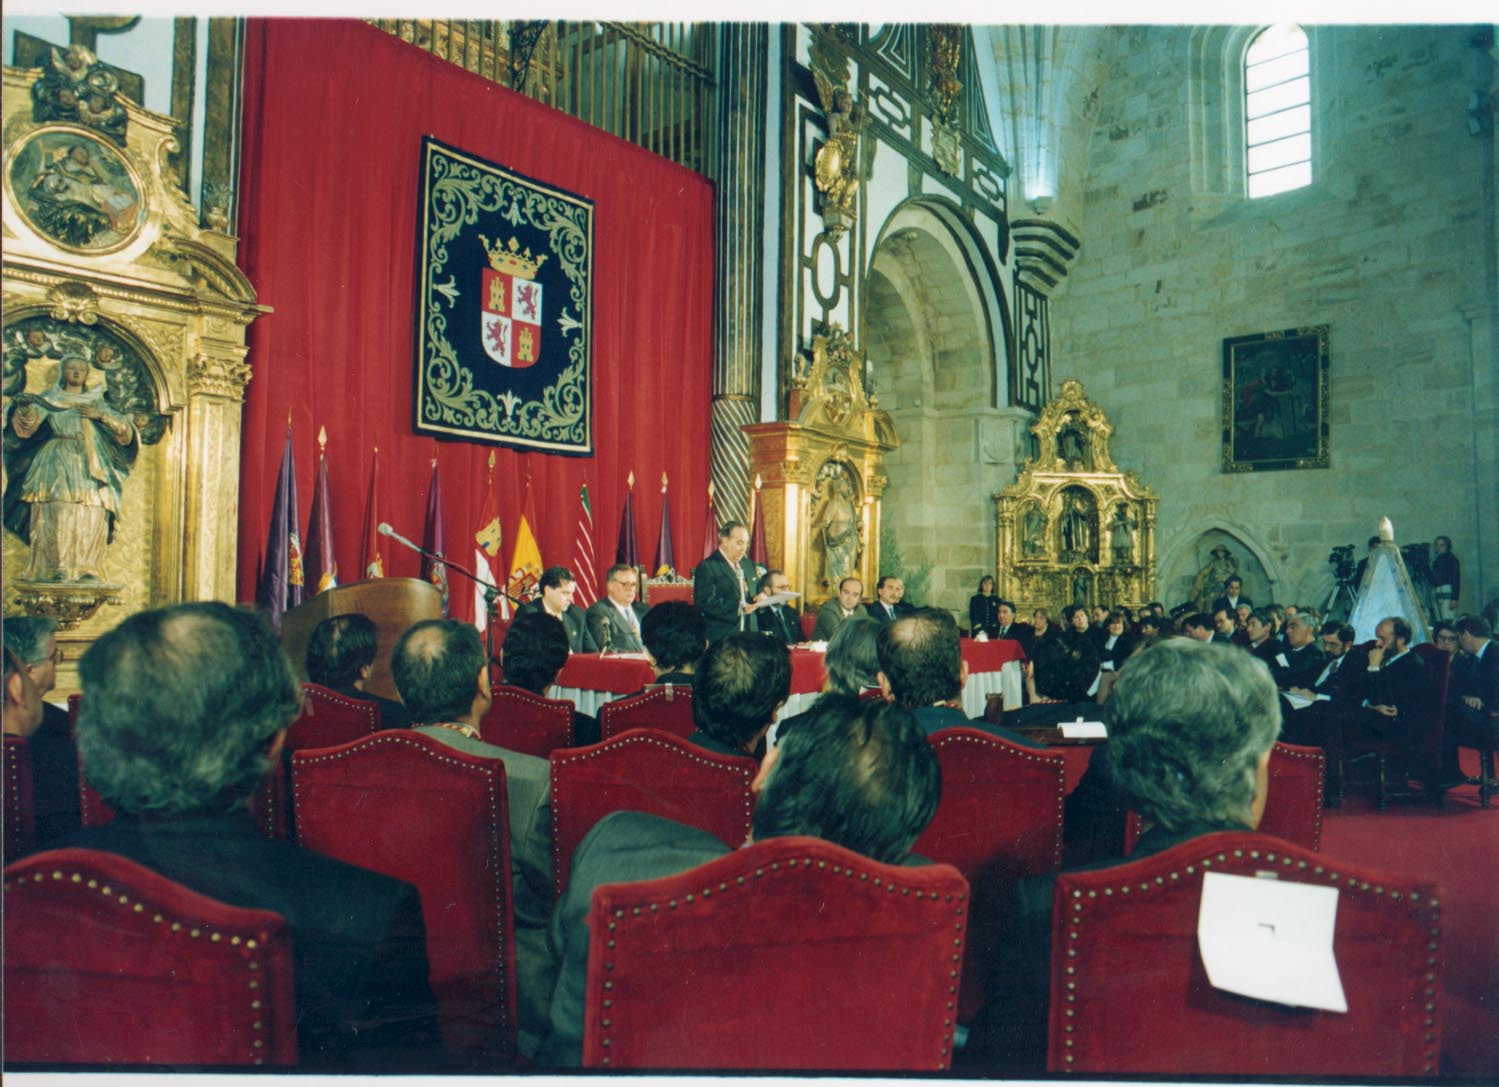 1994. Manuel Estella lee su discurso del XI aniversario en la iglesia de San Ildefonso de Zamora.